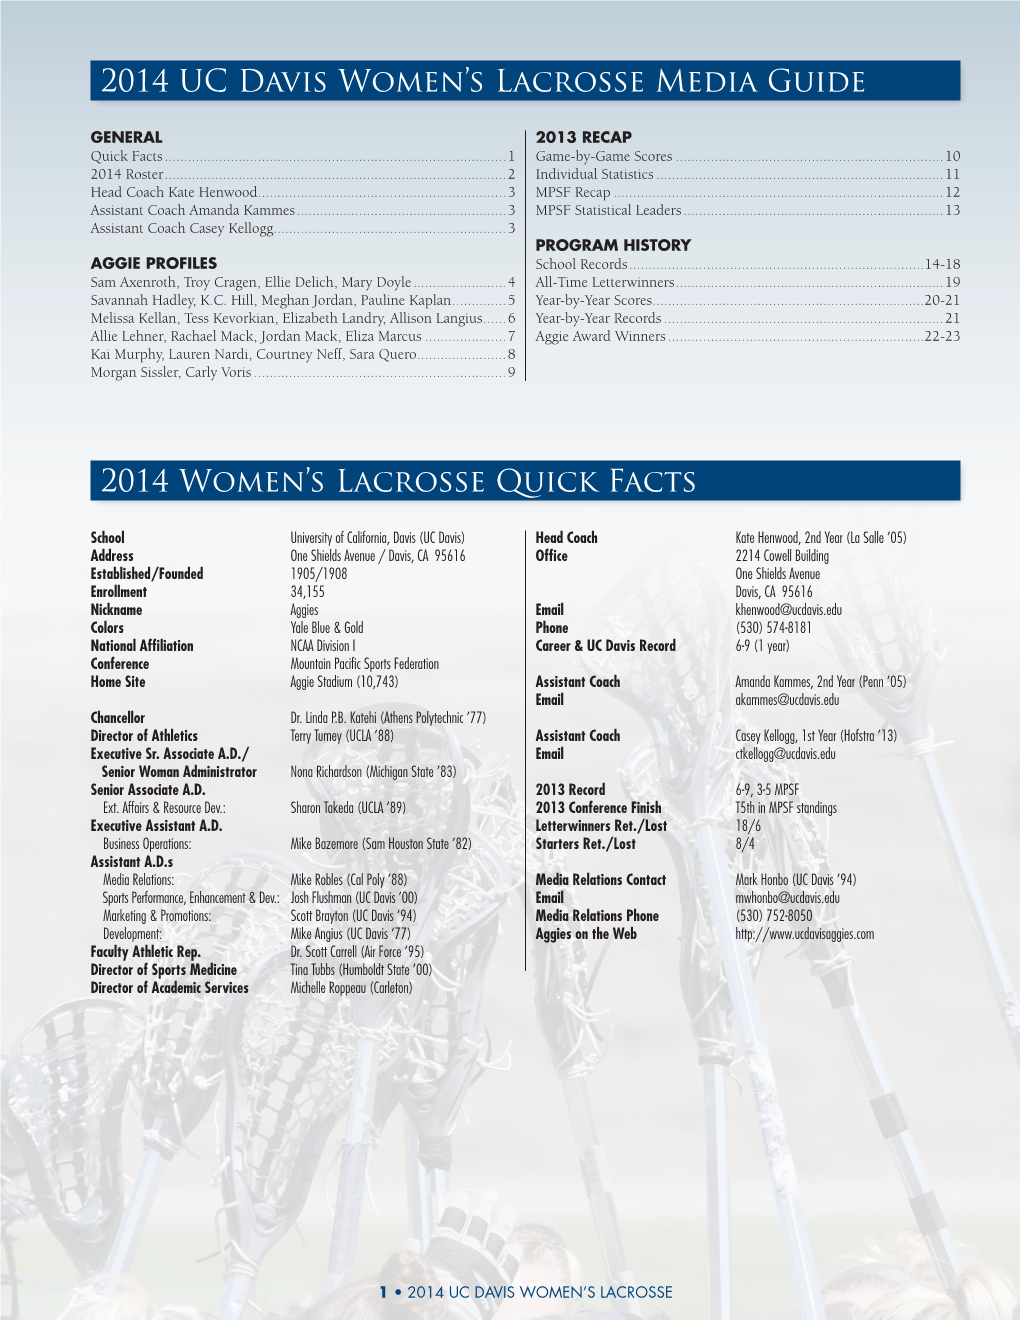 2014 Women's Lacrosse Quick Facts 2014 UC Davis Women's Lacrosse Media Guide